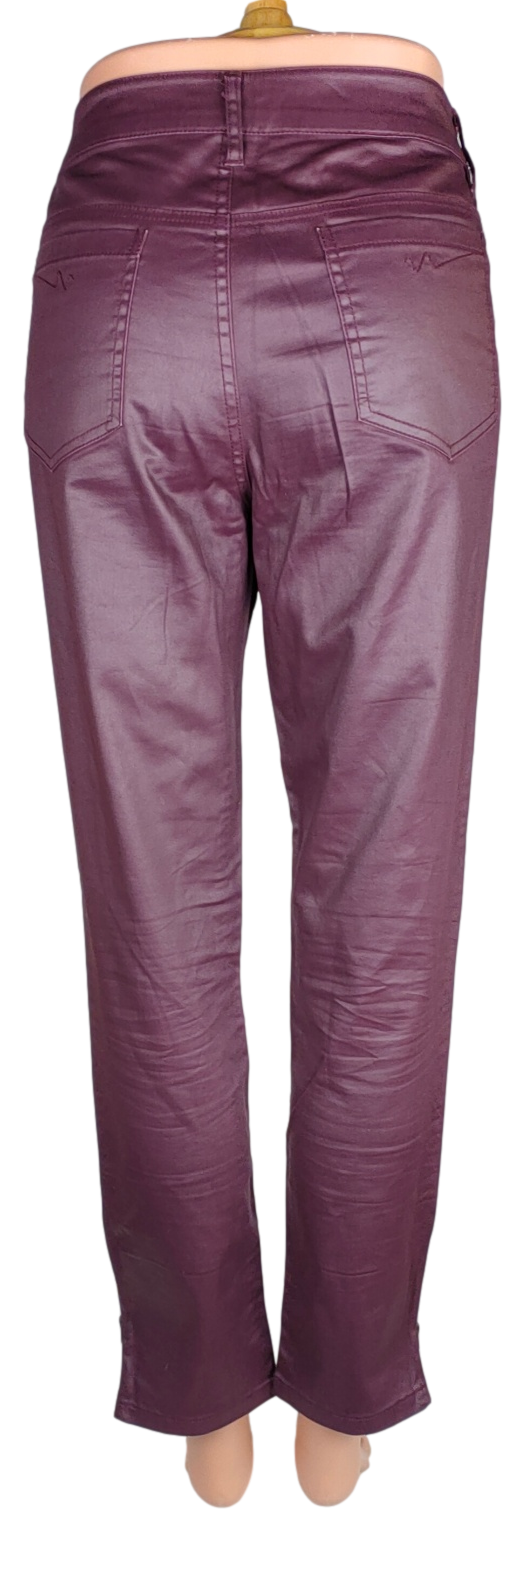 Pantalon Monoprix -Taille 40